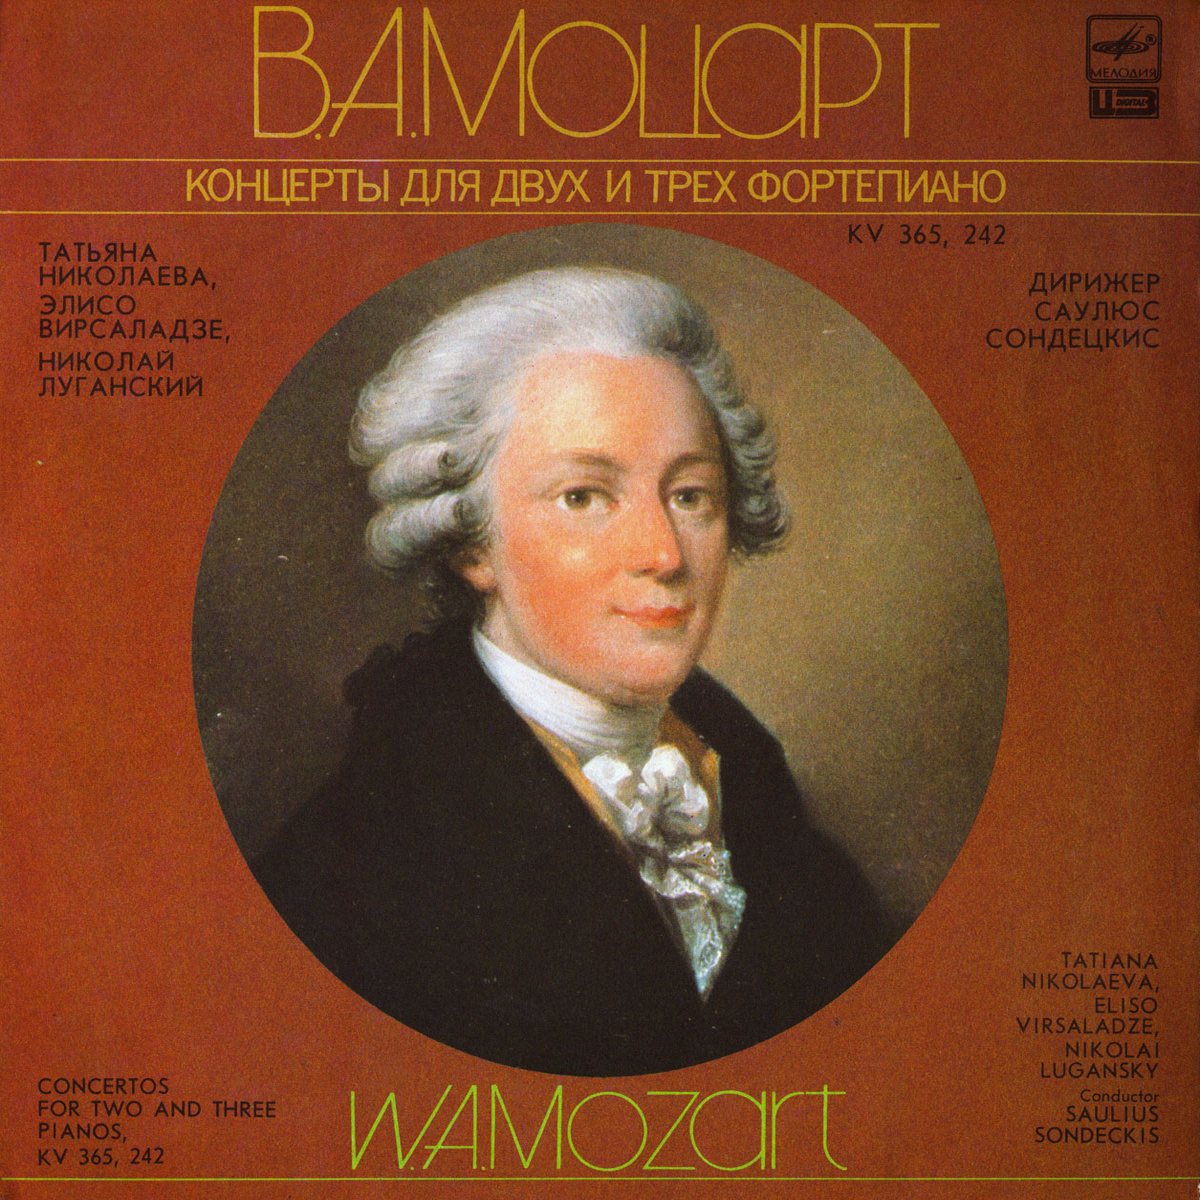 В. МОЦАРТ (1756-1791) Концерты для двух и трех фортепиано (Т. Николаева, Э. Вирсаладзе, Н. Луганский, С. Сондецкис)